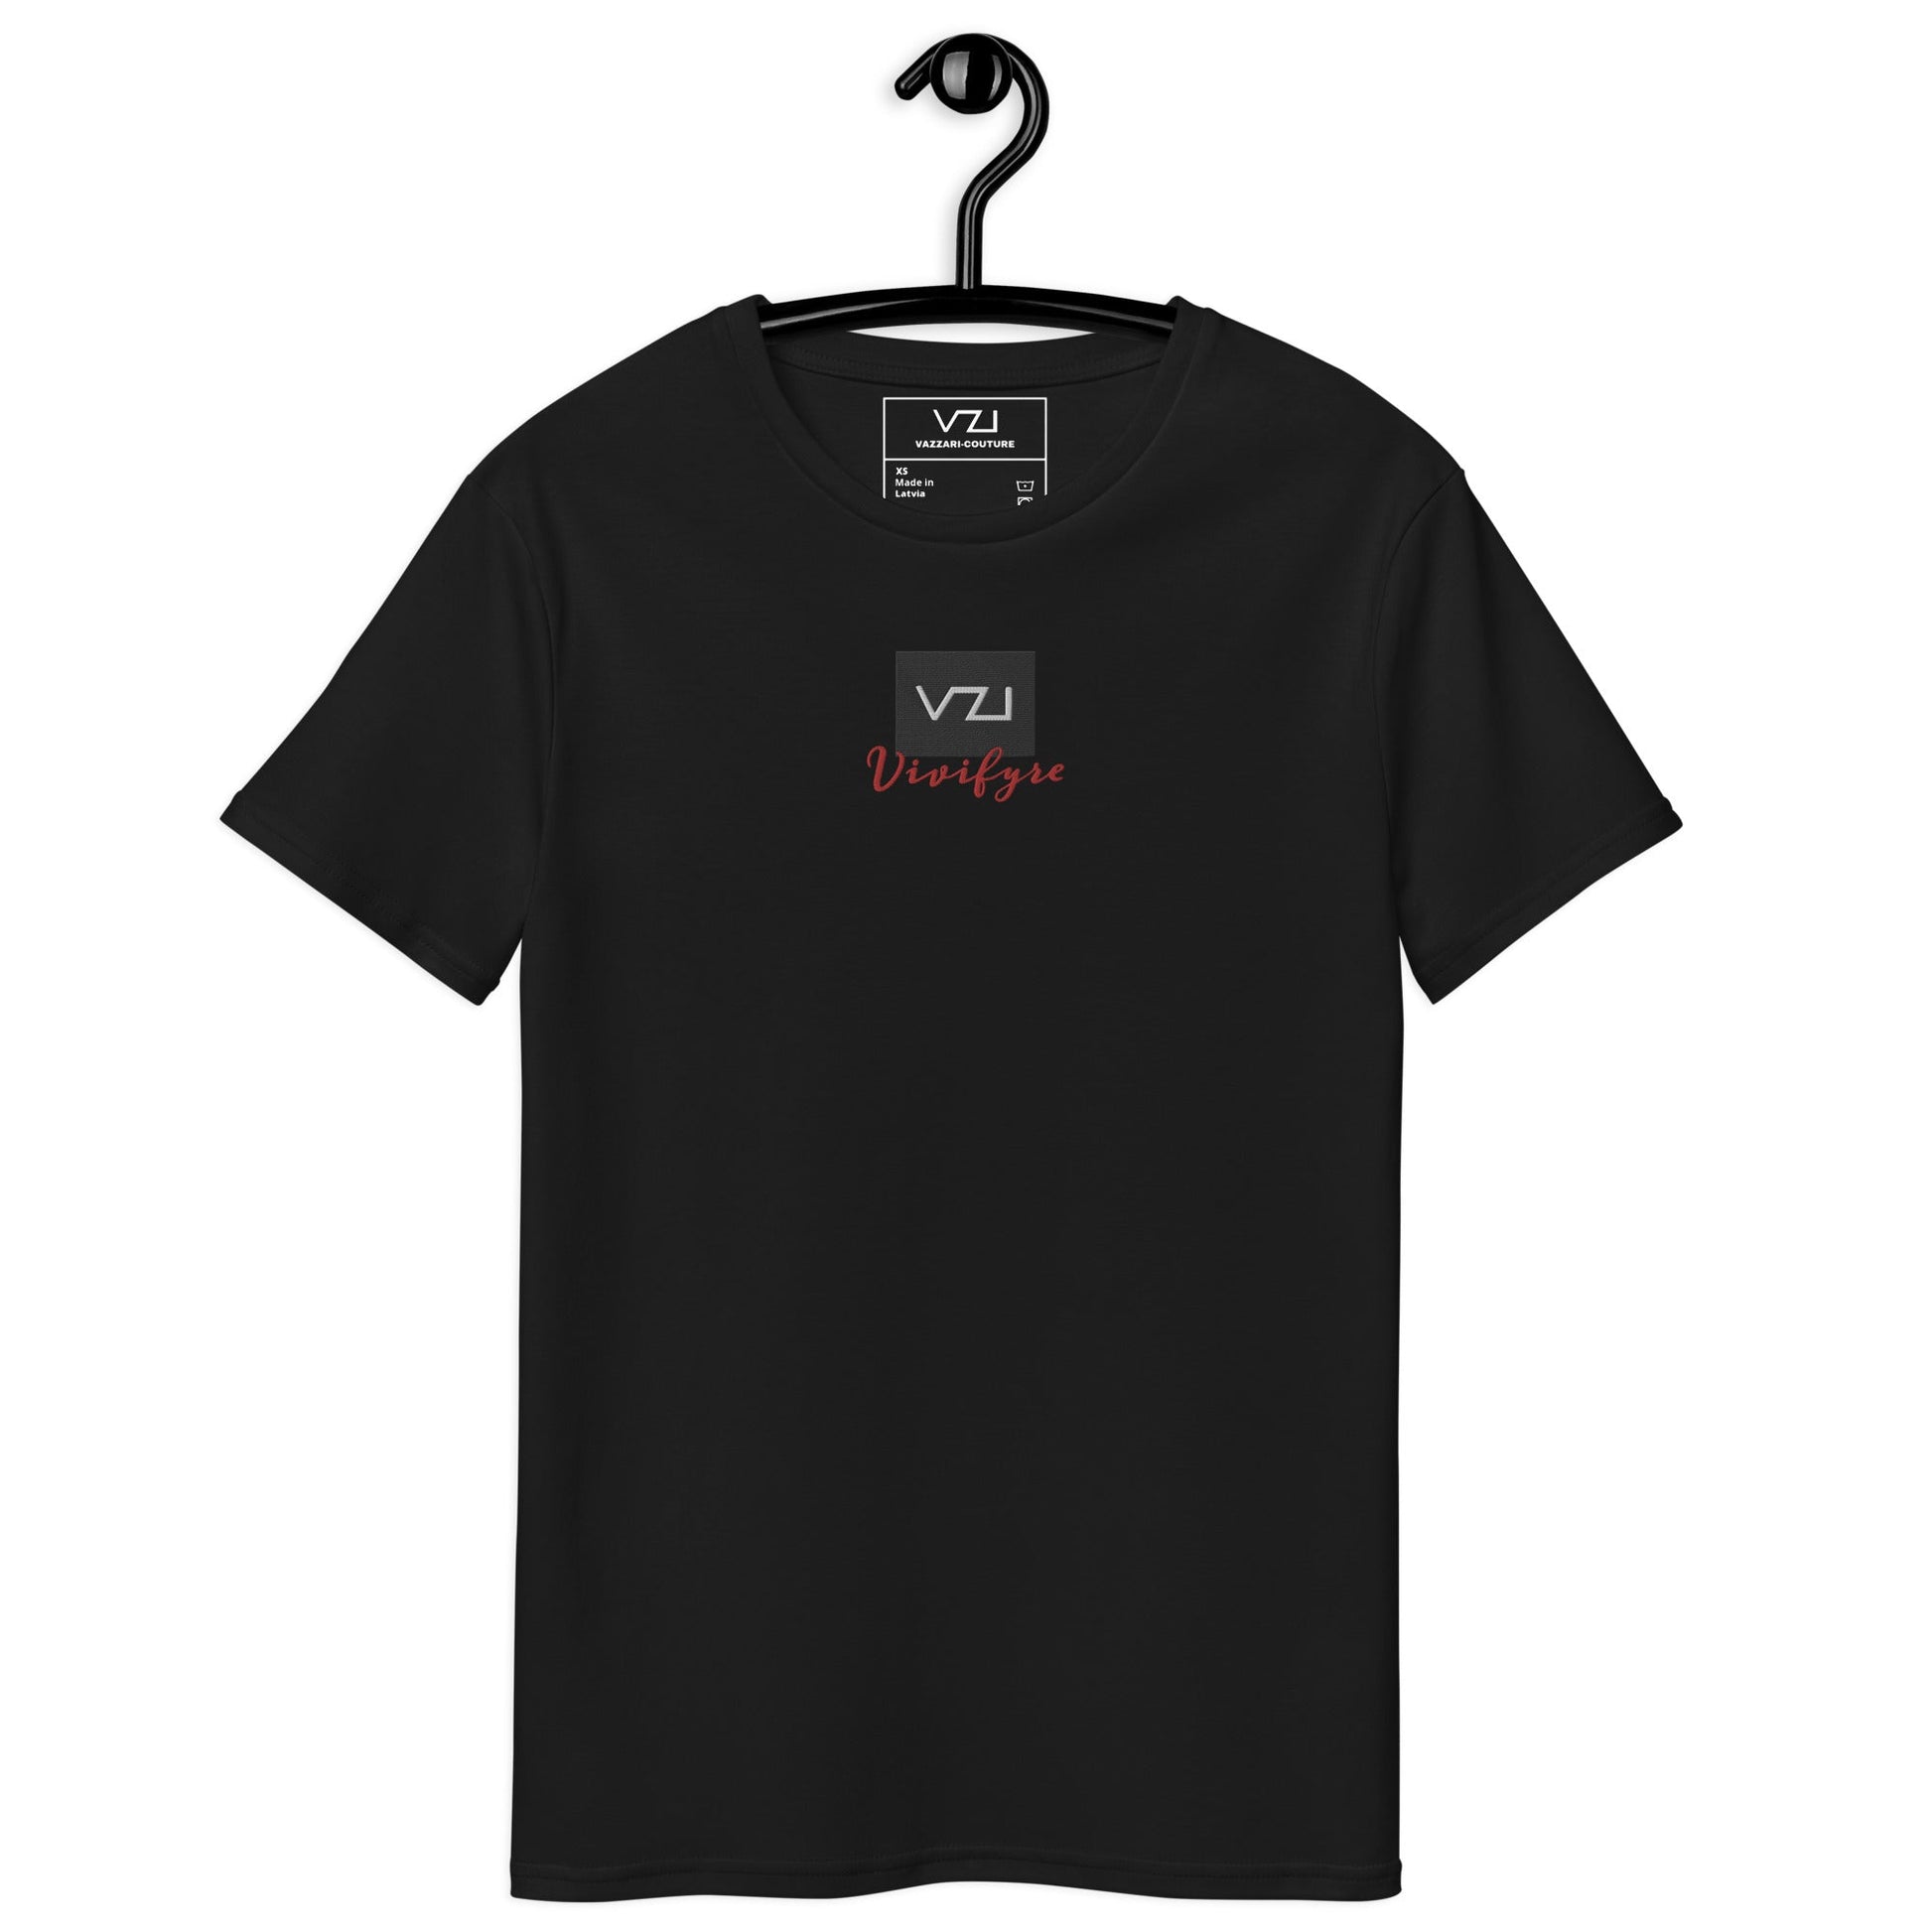 Vivifyre - Premium Cotton: T-Shirt For Men's - Durable, Soft, Casual Smart - Vazzari Couture